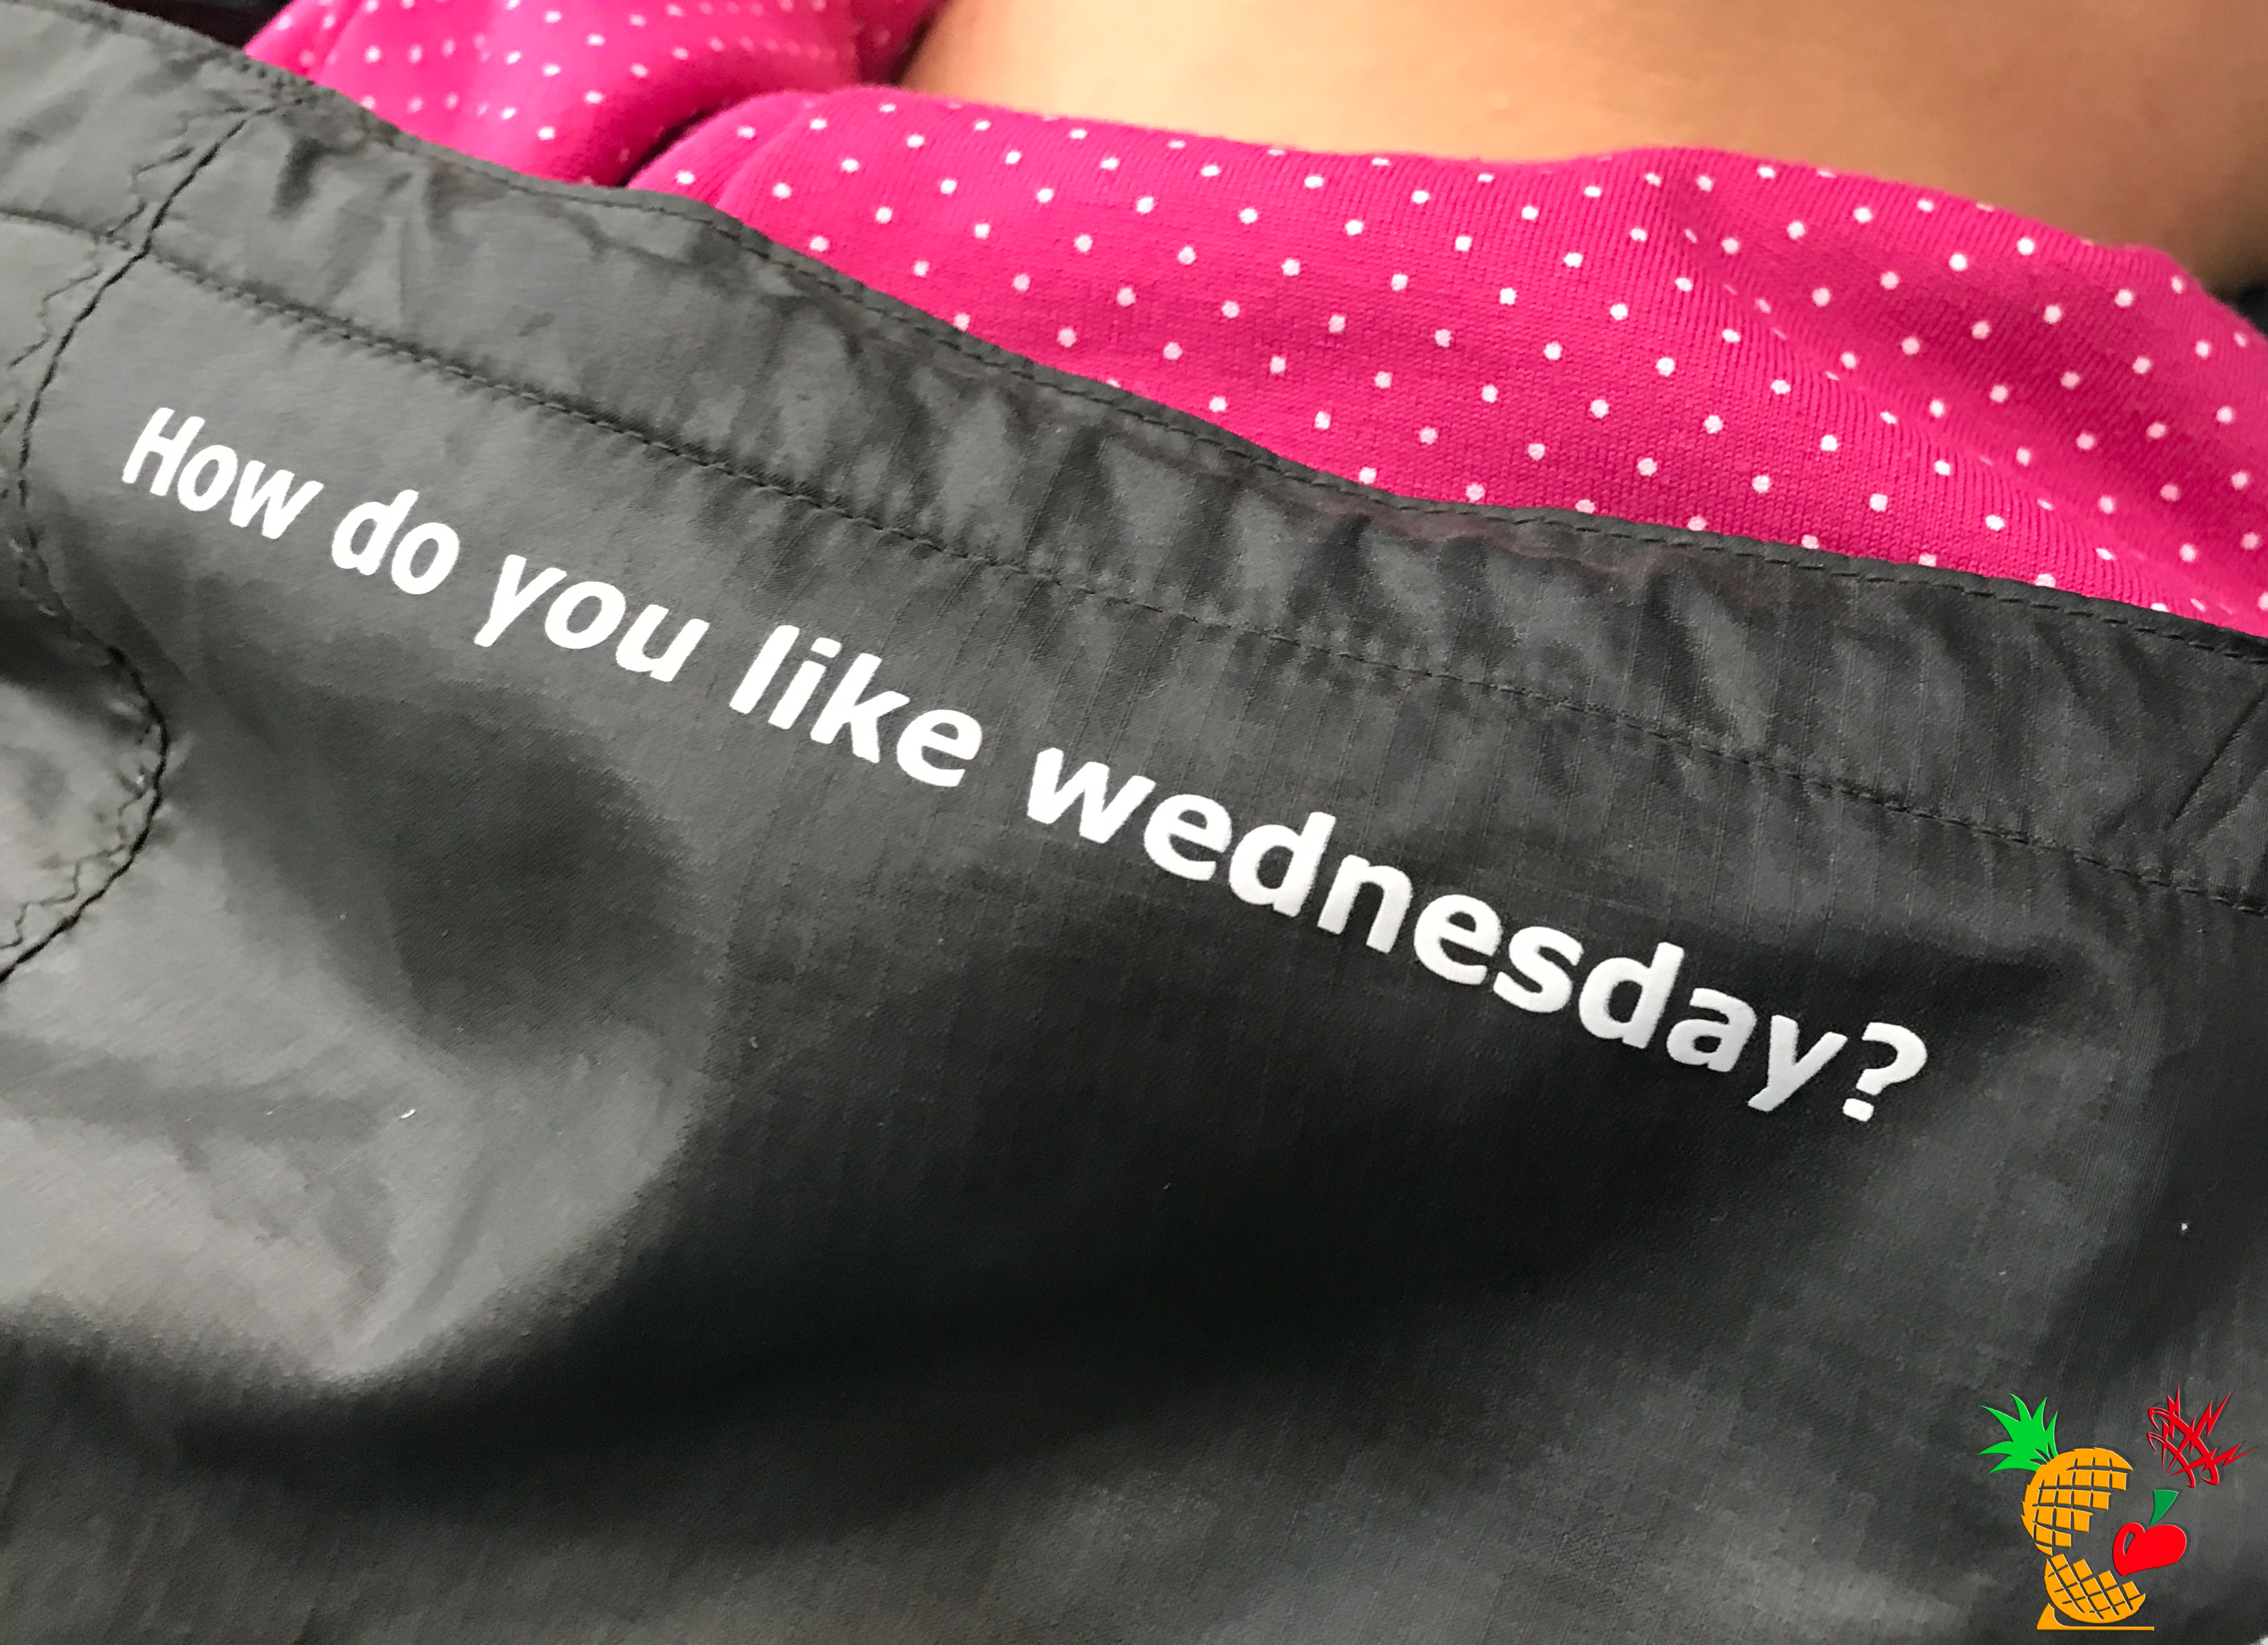 How do you like wednesday？